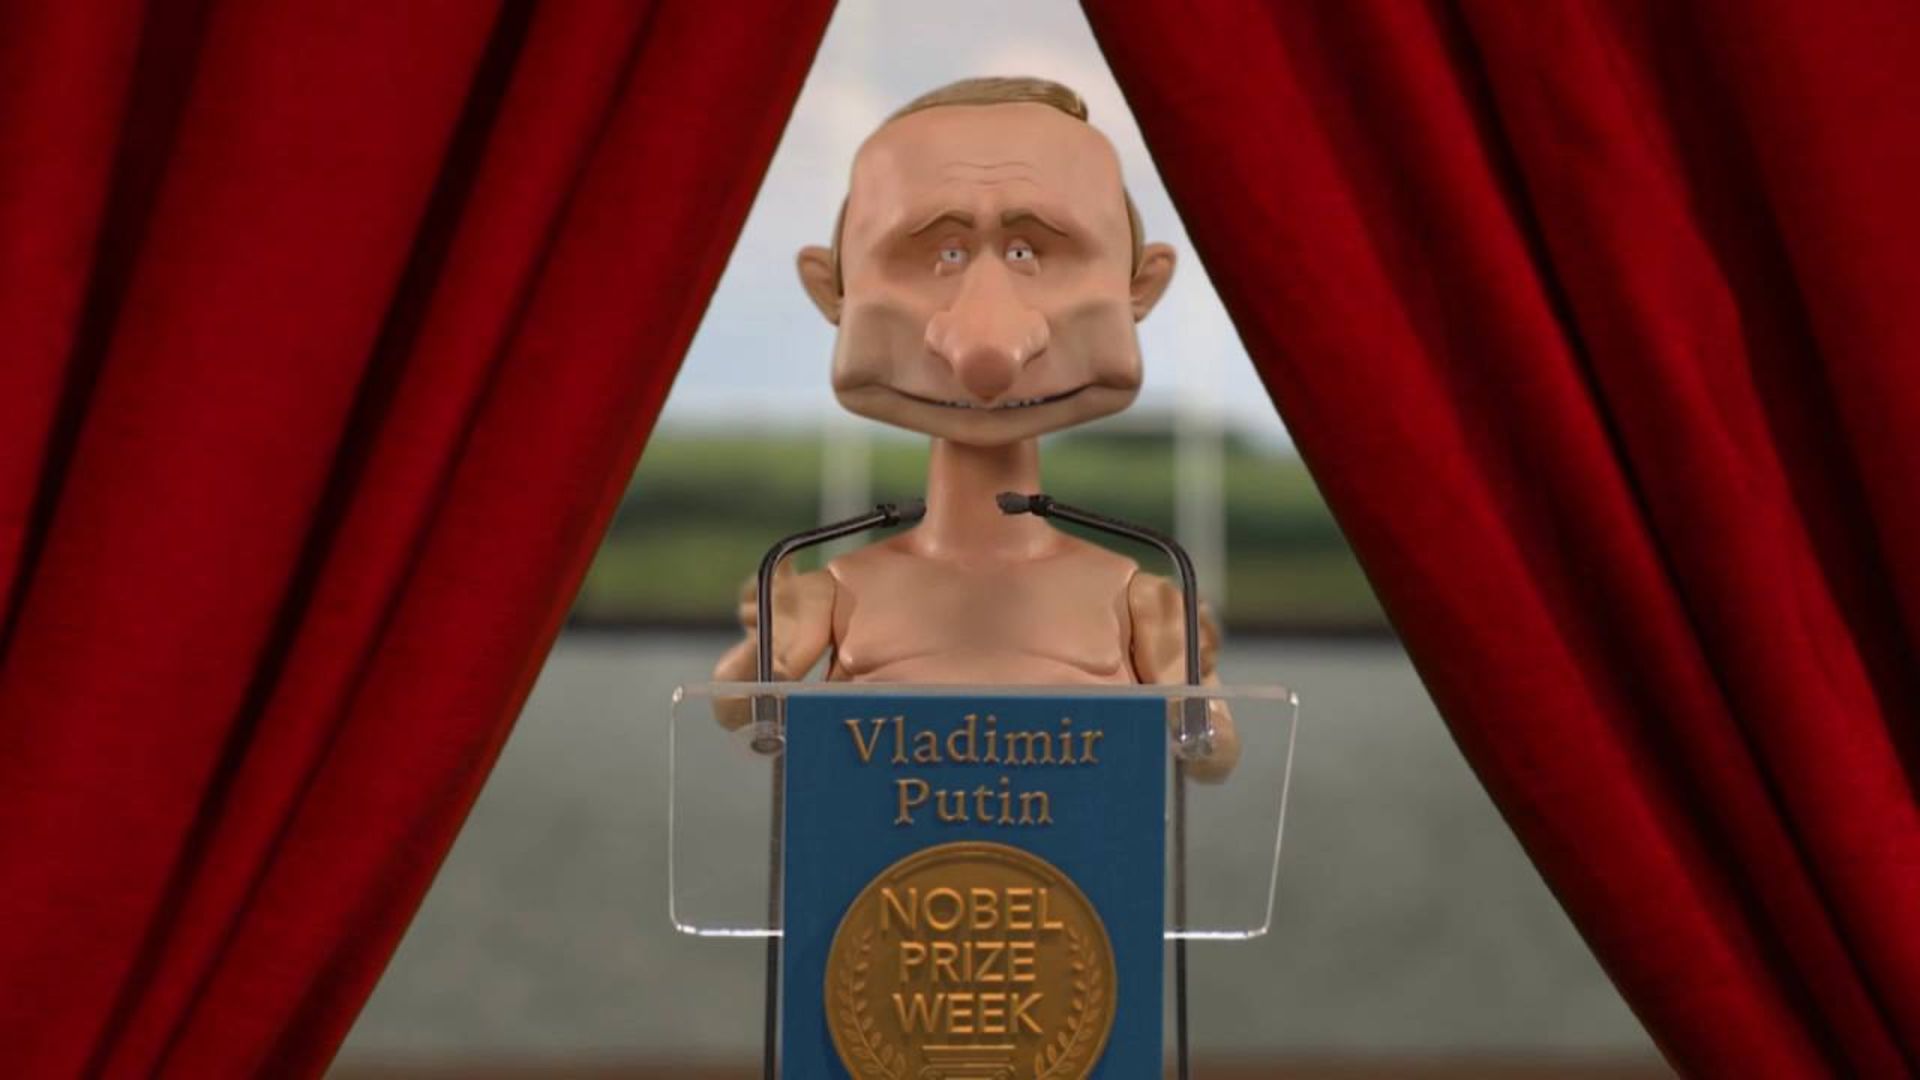 Newzoid puppet - Vladimir Putin